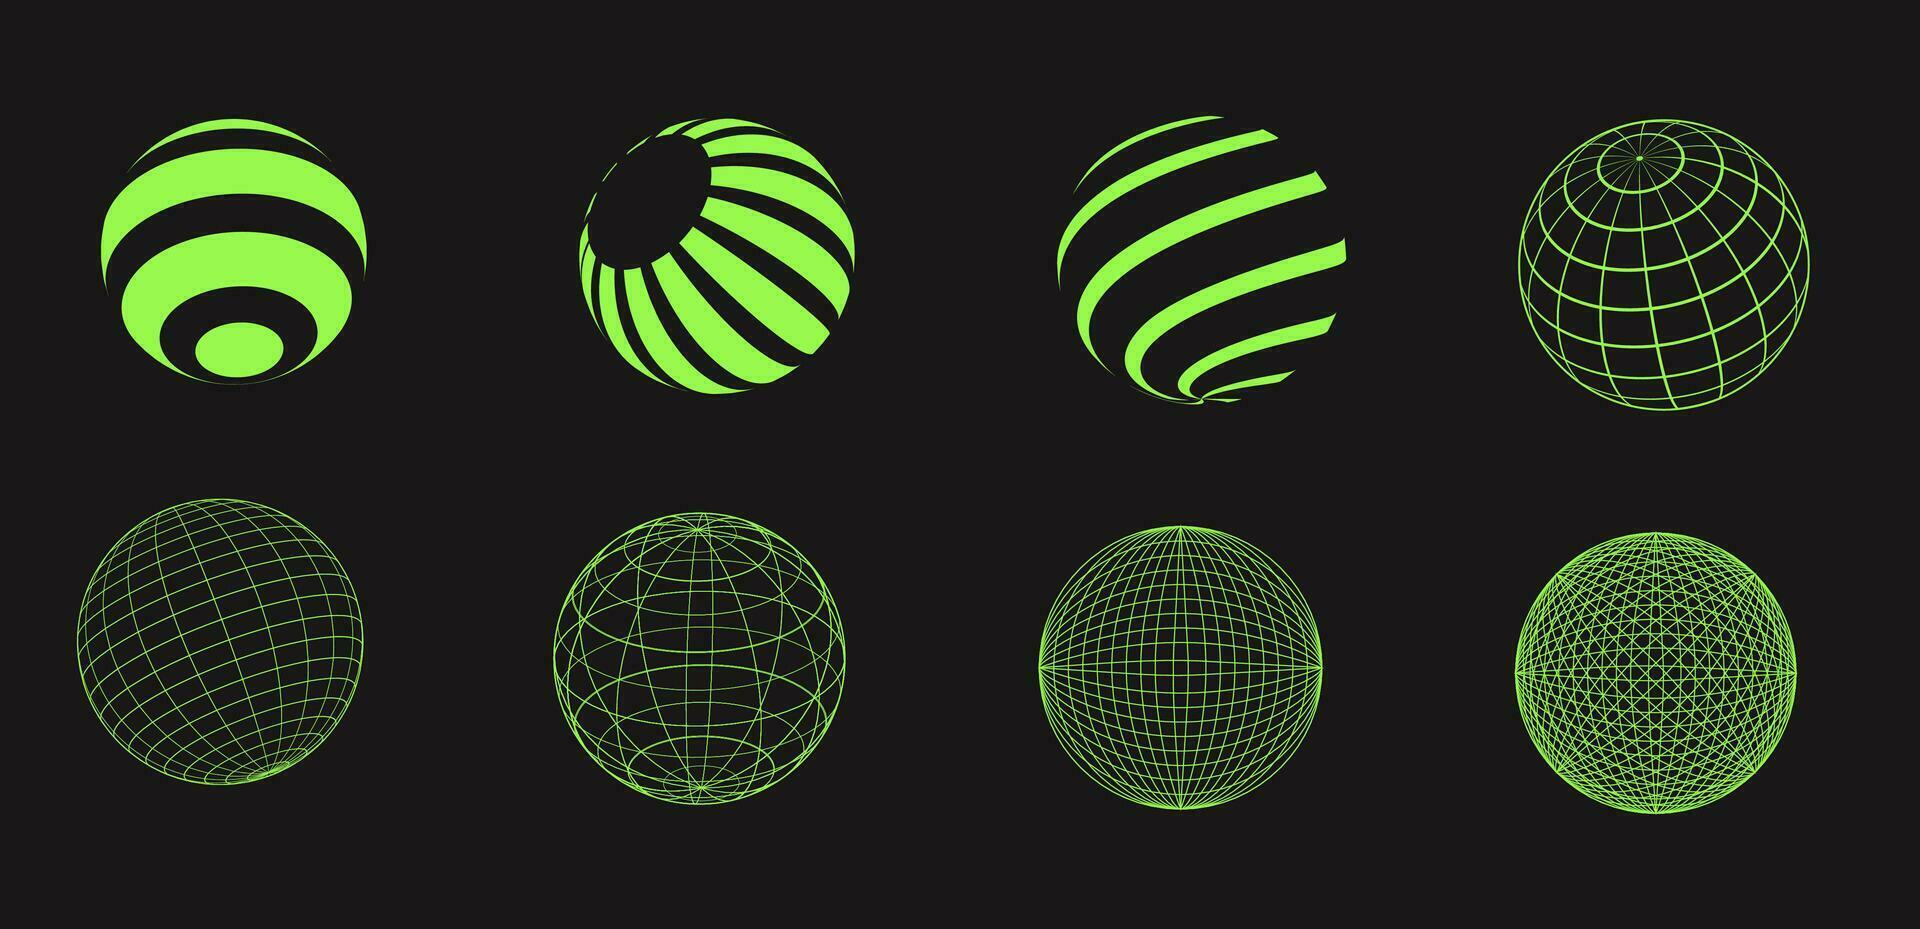 conjunto de estructura metálica formas ciber neo futurista rejillas, 3d malla objetos y formas estructura metálica ondulado geométrico perspectiva pelota, esfera. Años 80 cyberpunk elementos, vector colocar.